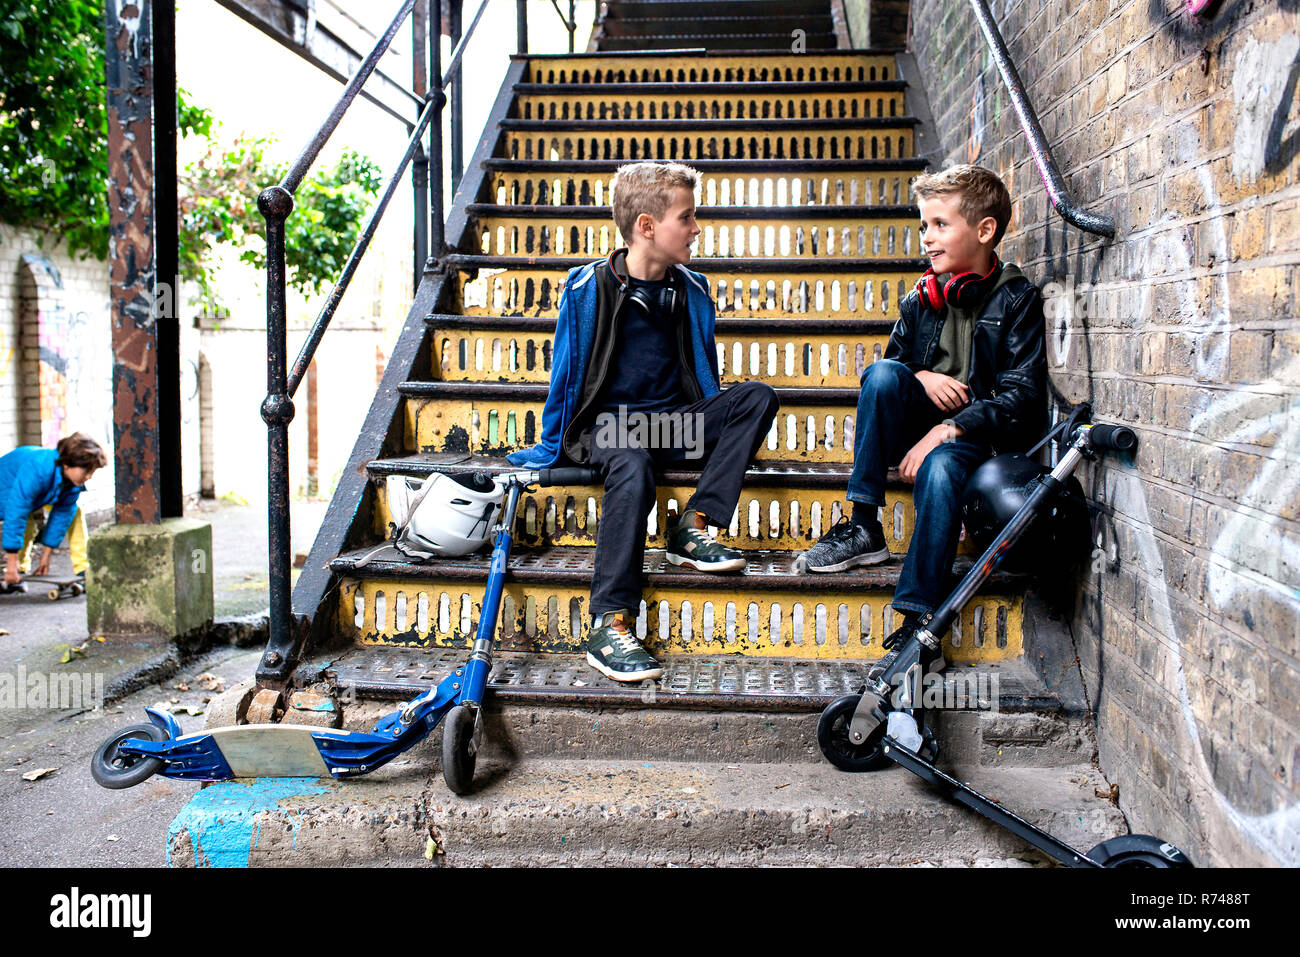 Parler des jumeaux sur escalier métallique Banque D'Images